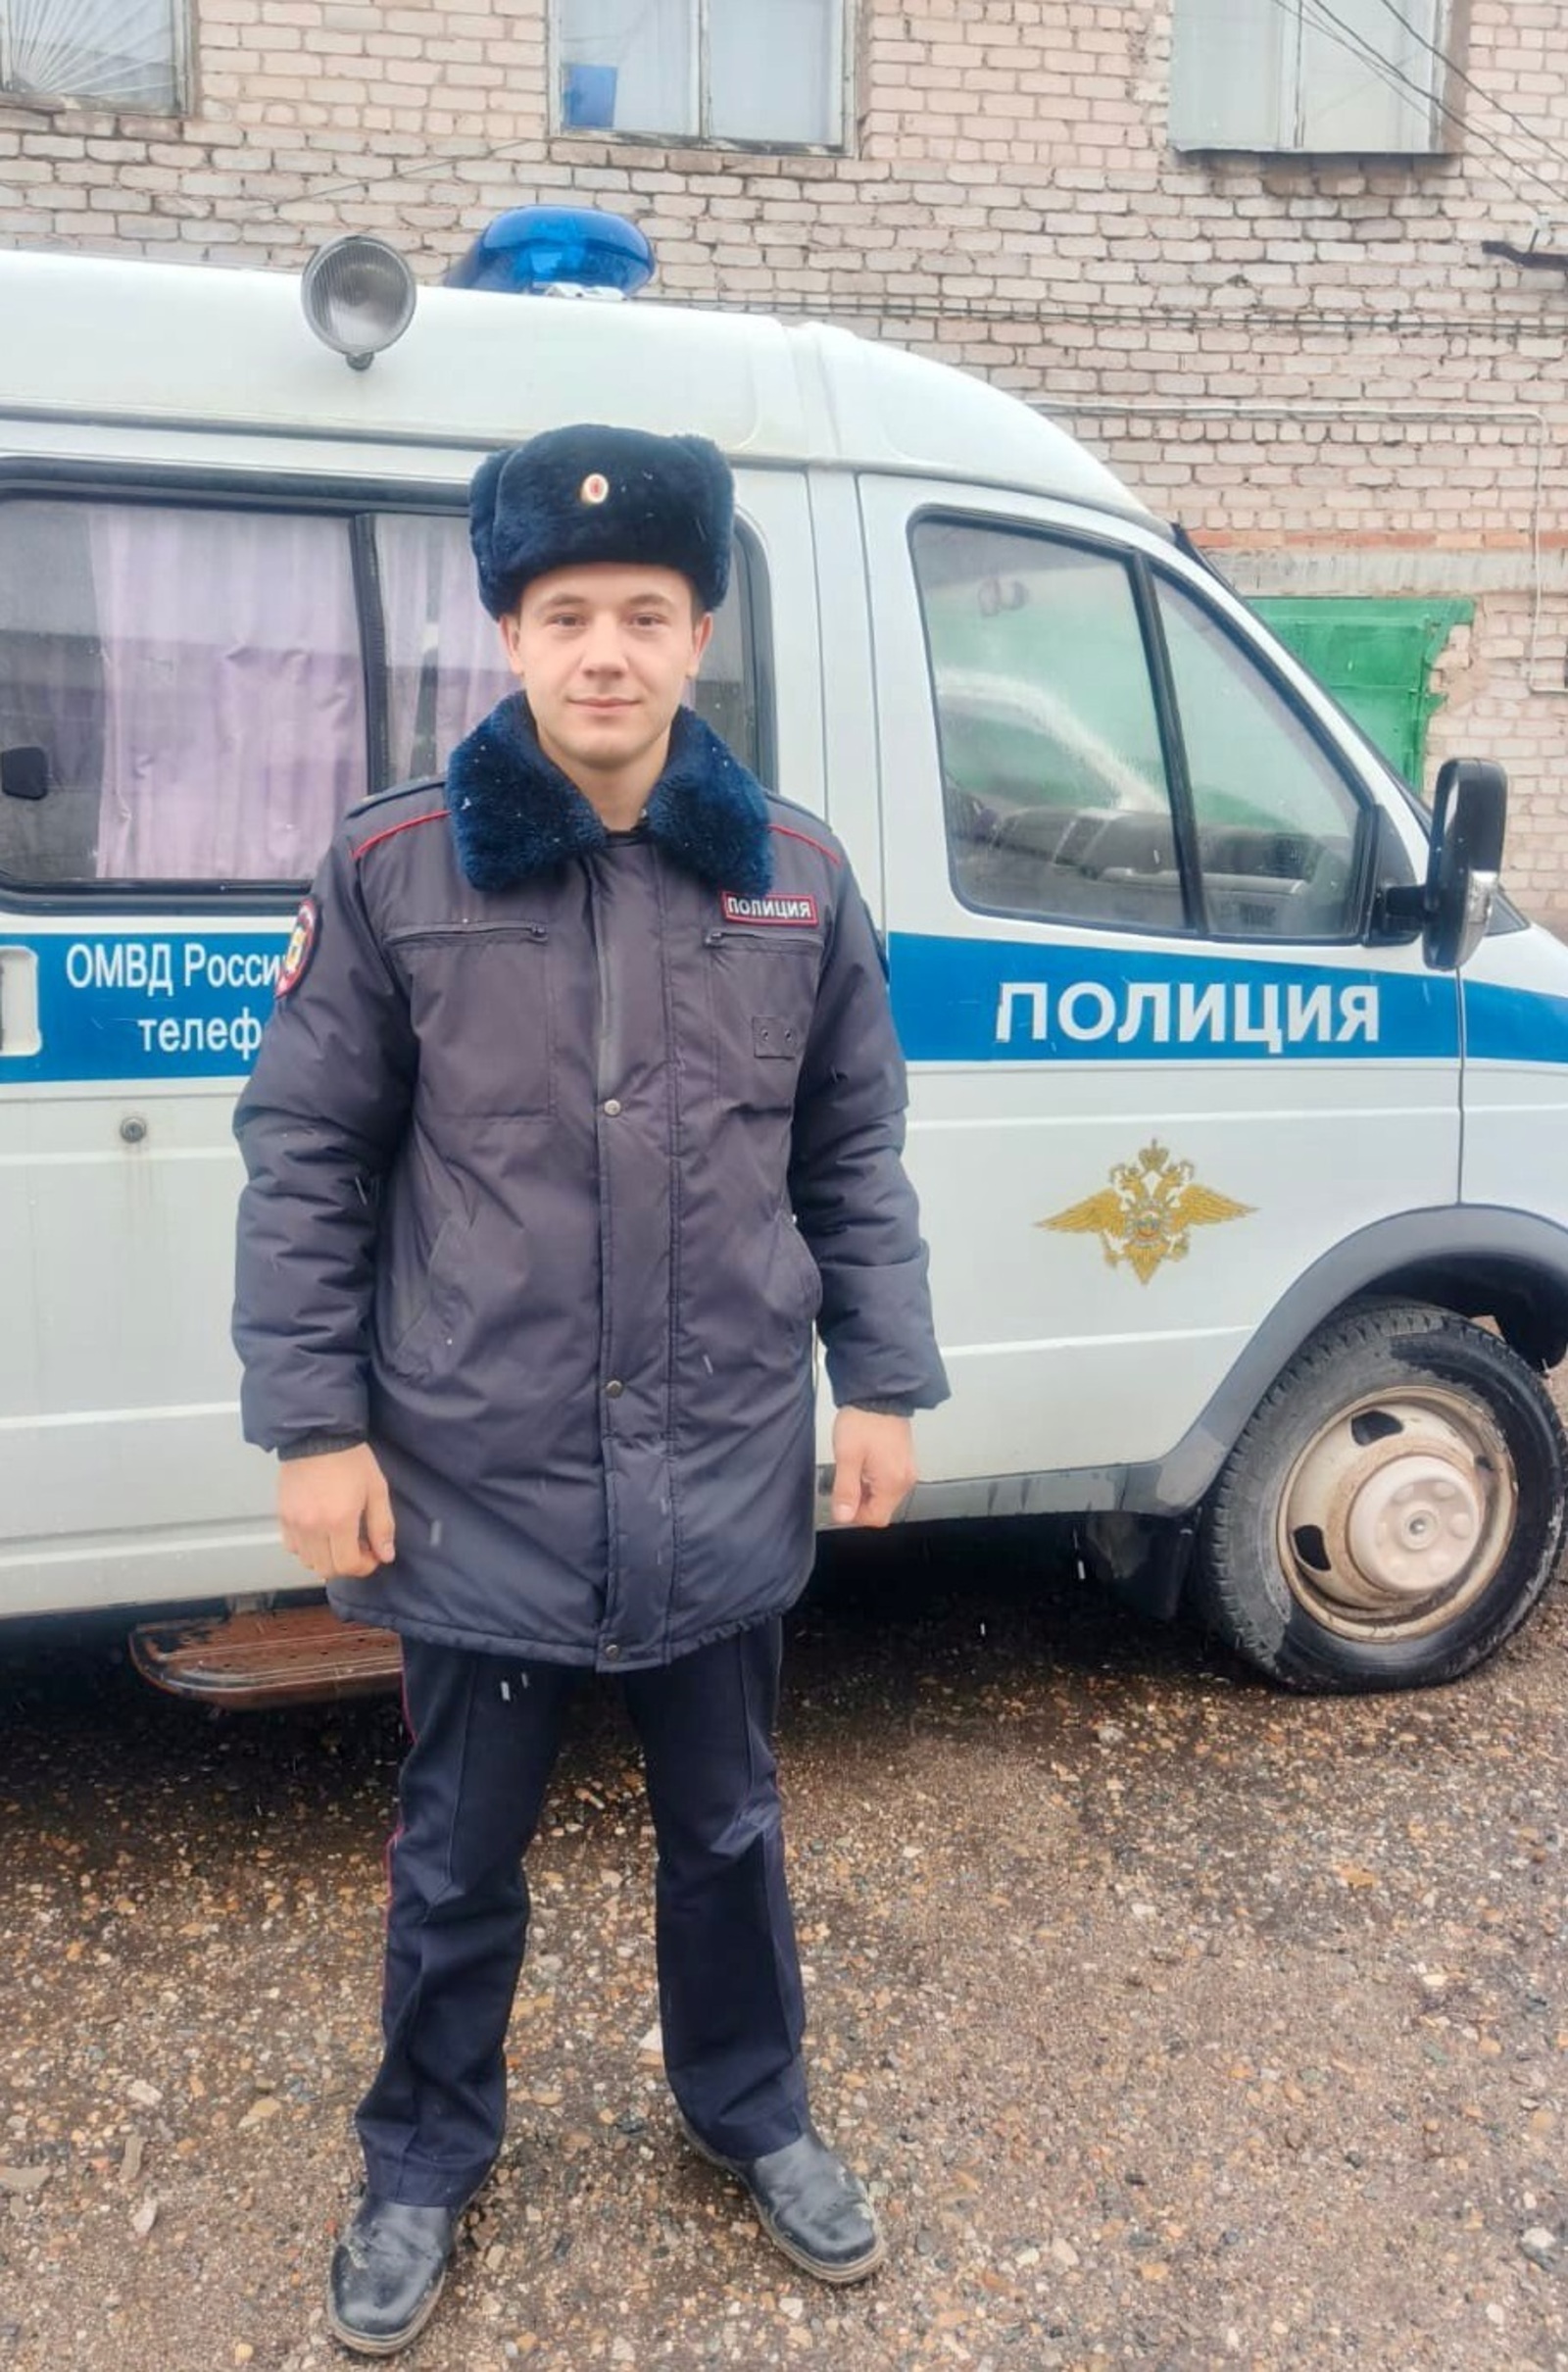 Сегодня профессиональный праздник отмечает и молодой участковый полиции Алмаз Мухаметзянов